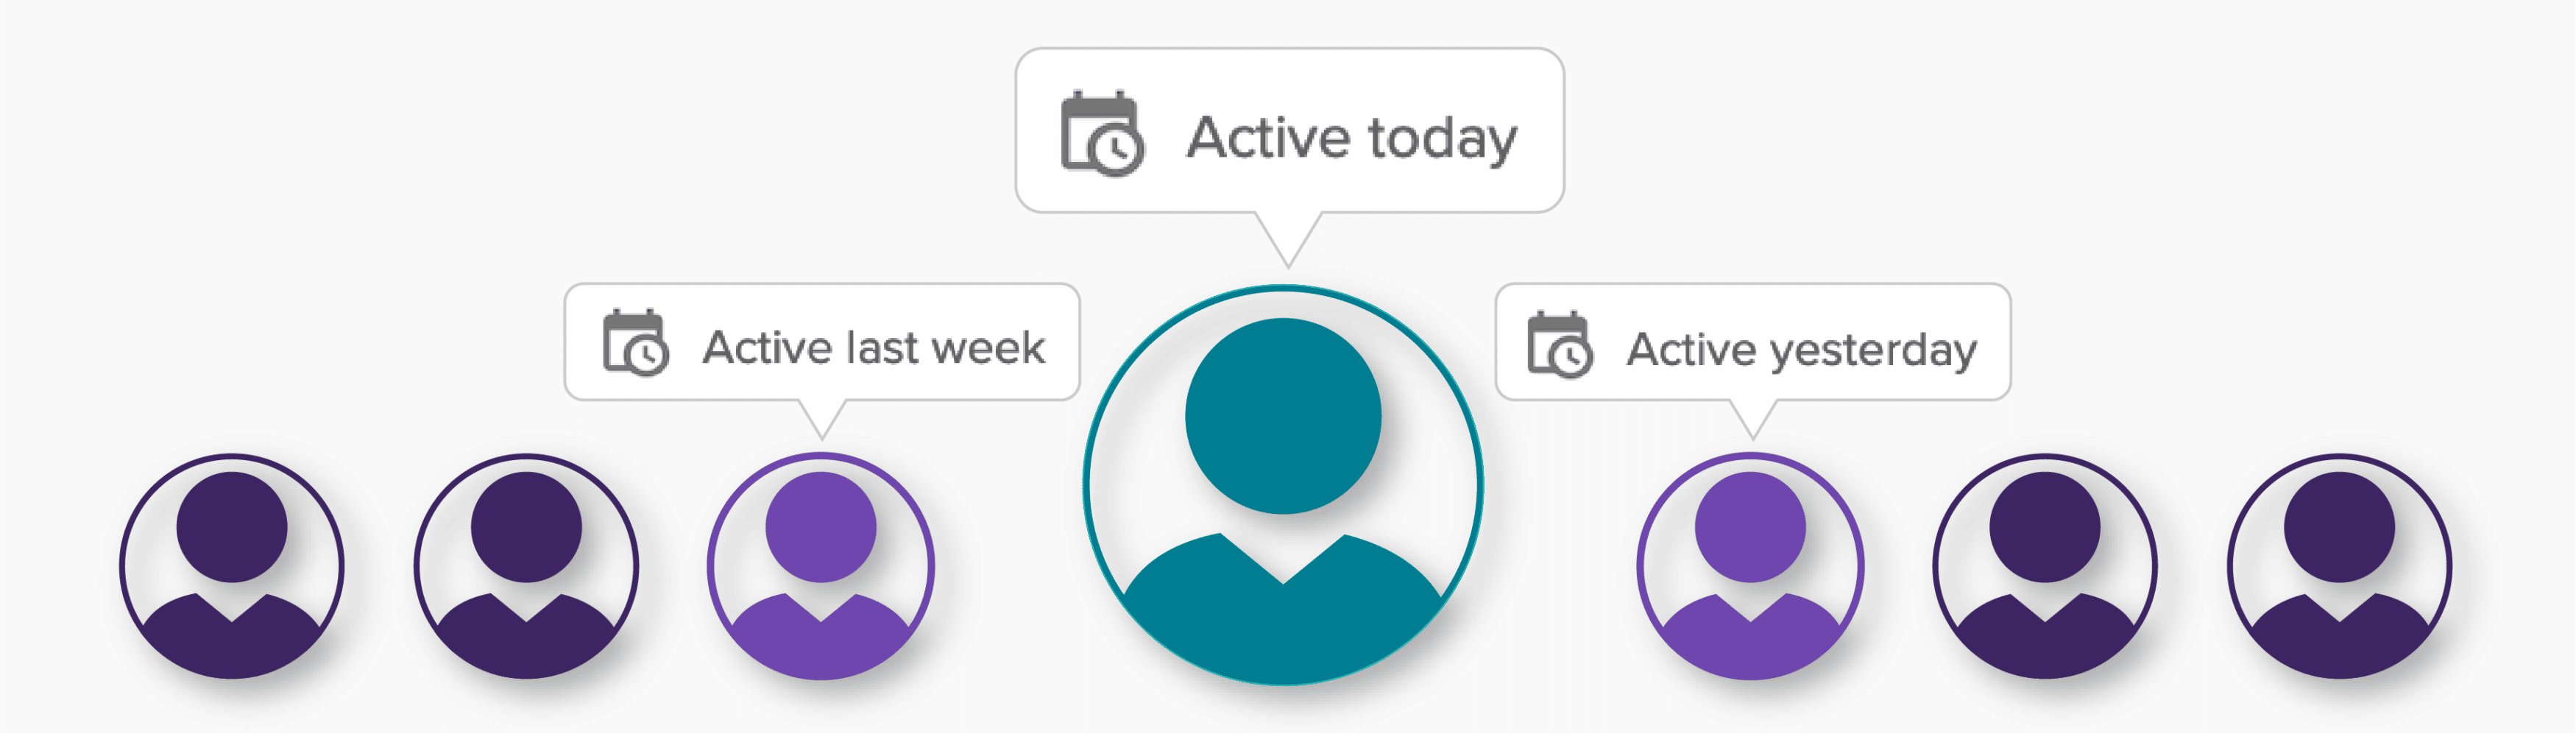 recent activity icon